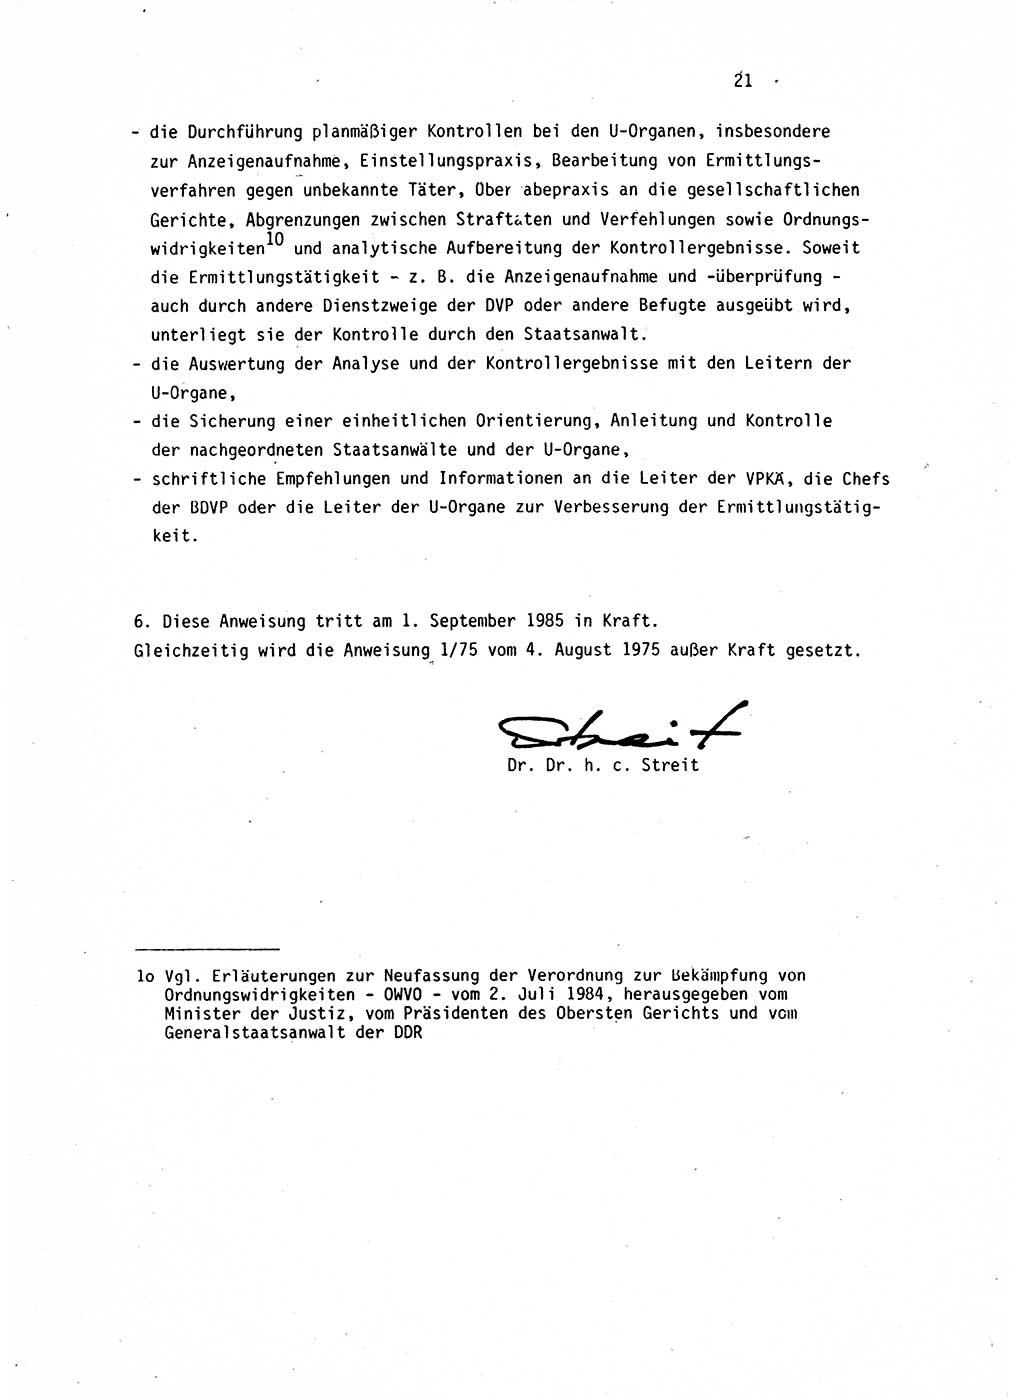 Leitung des Ermittlungsverfahren (EV) durch den Staatsanwalt [Deutsche Demokratische Republik (DDR)] 1985, Seite 21 (Ltg. EV StA DDR 1985, S. 21)